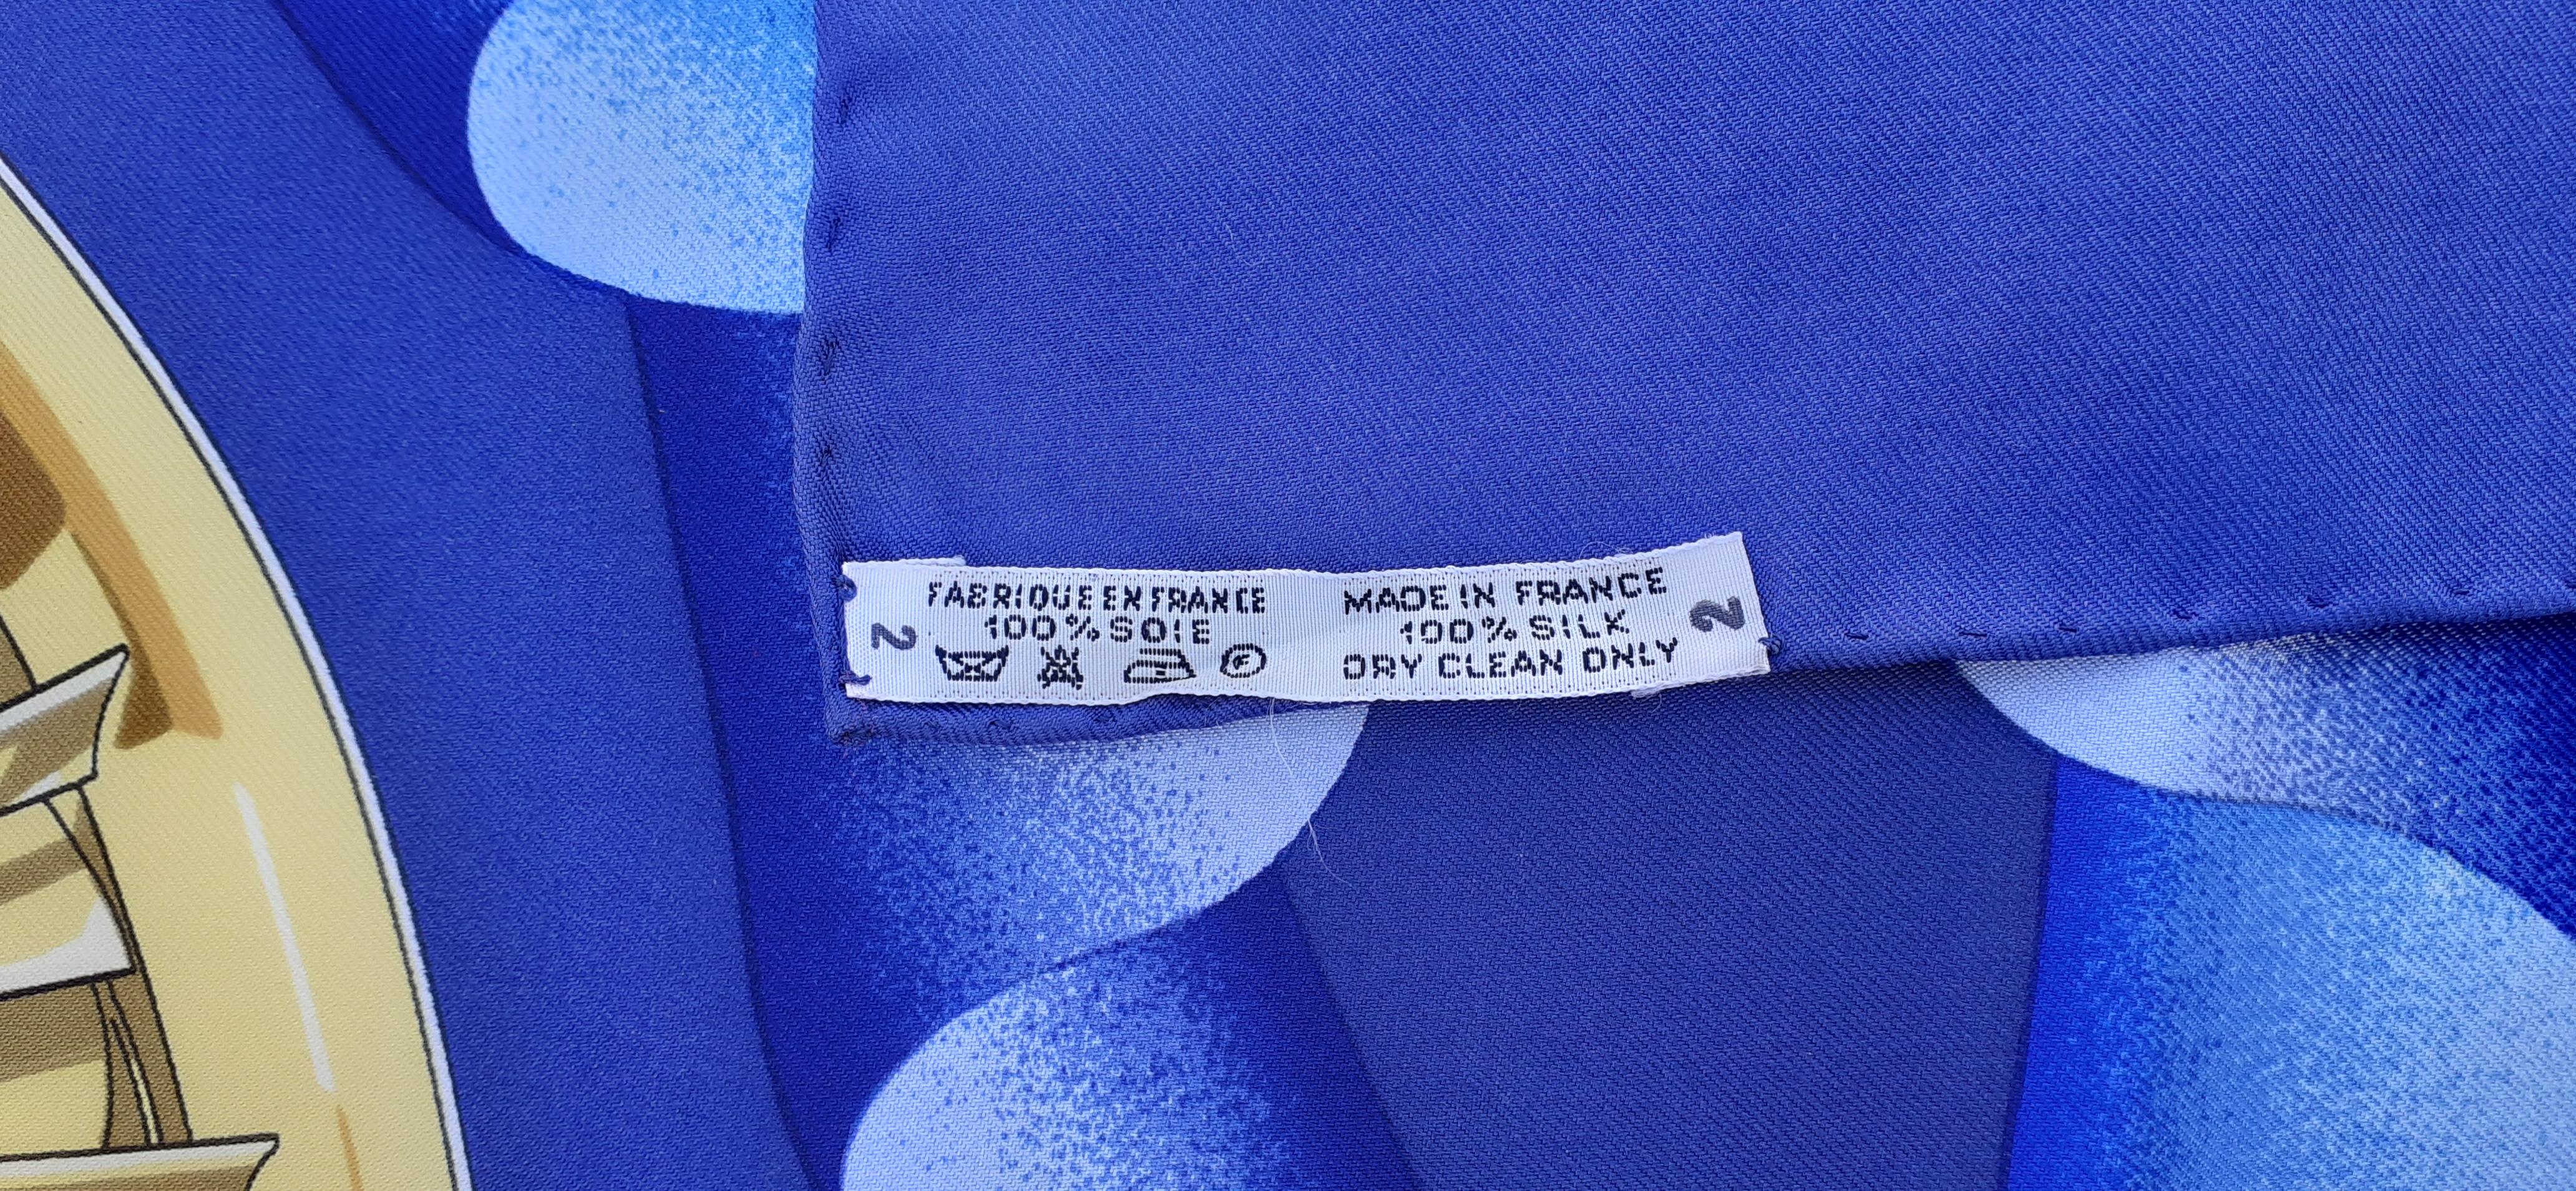 Hermès Seidenschal Verkauft exklusiv an Bord von Air France Flugzeugen Ledoux 1962 Selten im Angebot 7